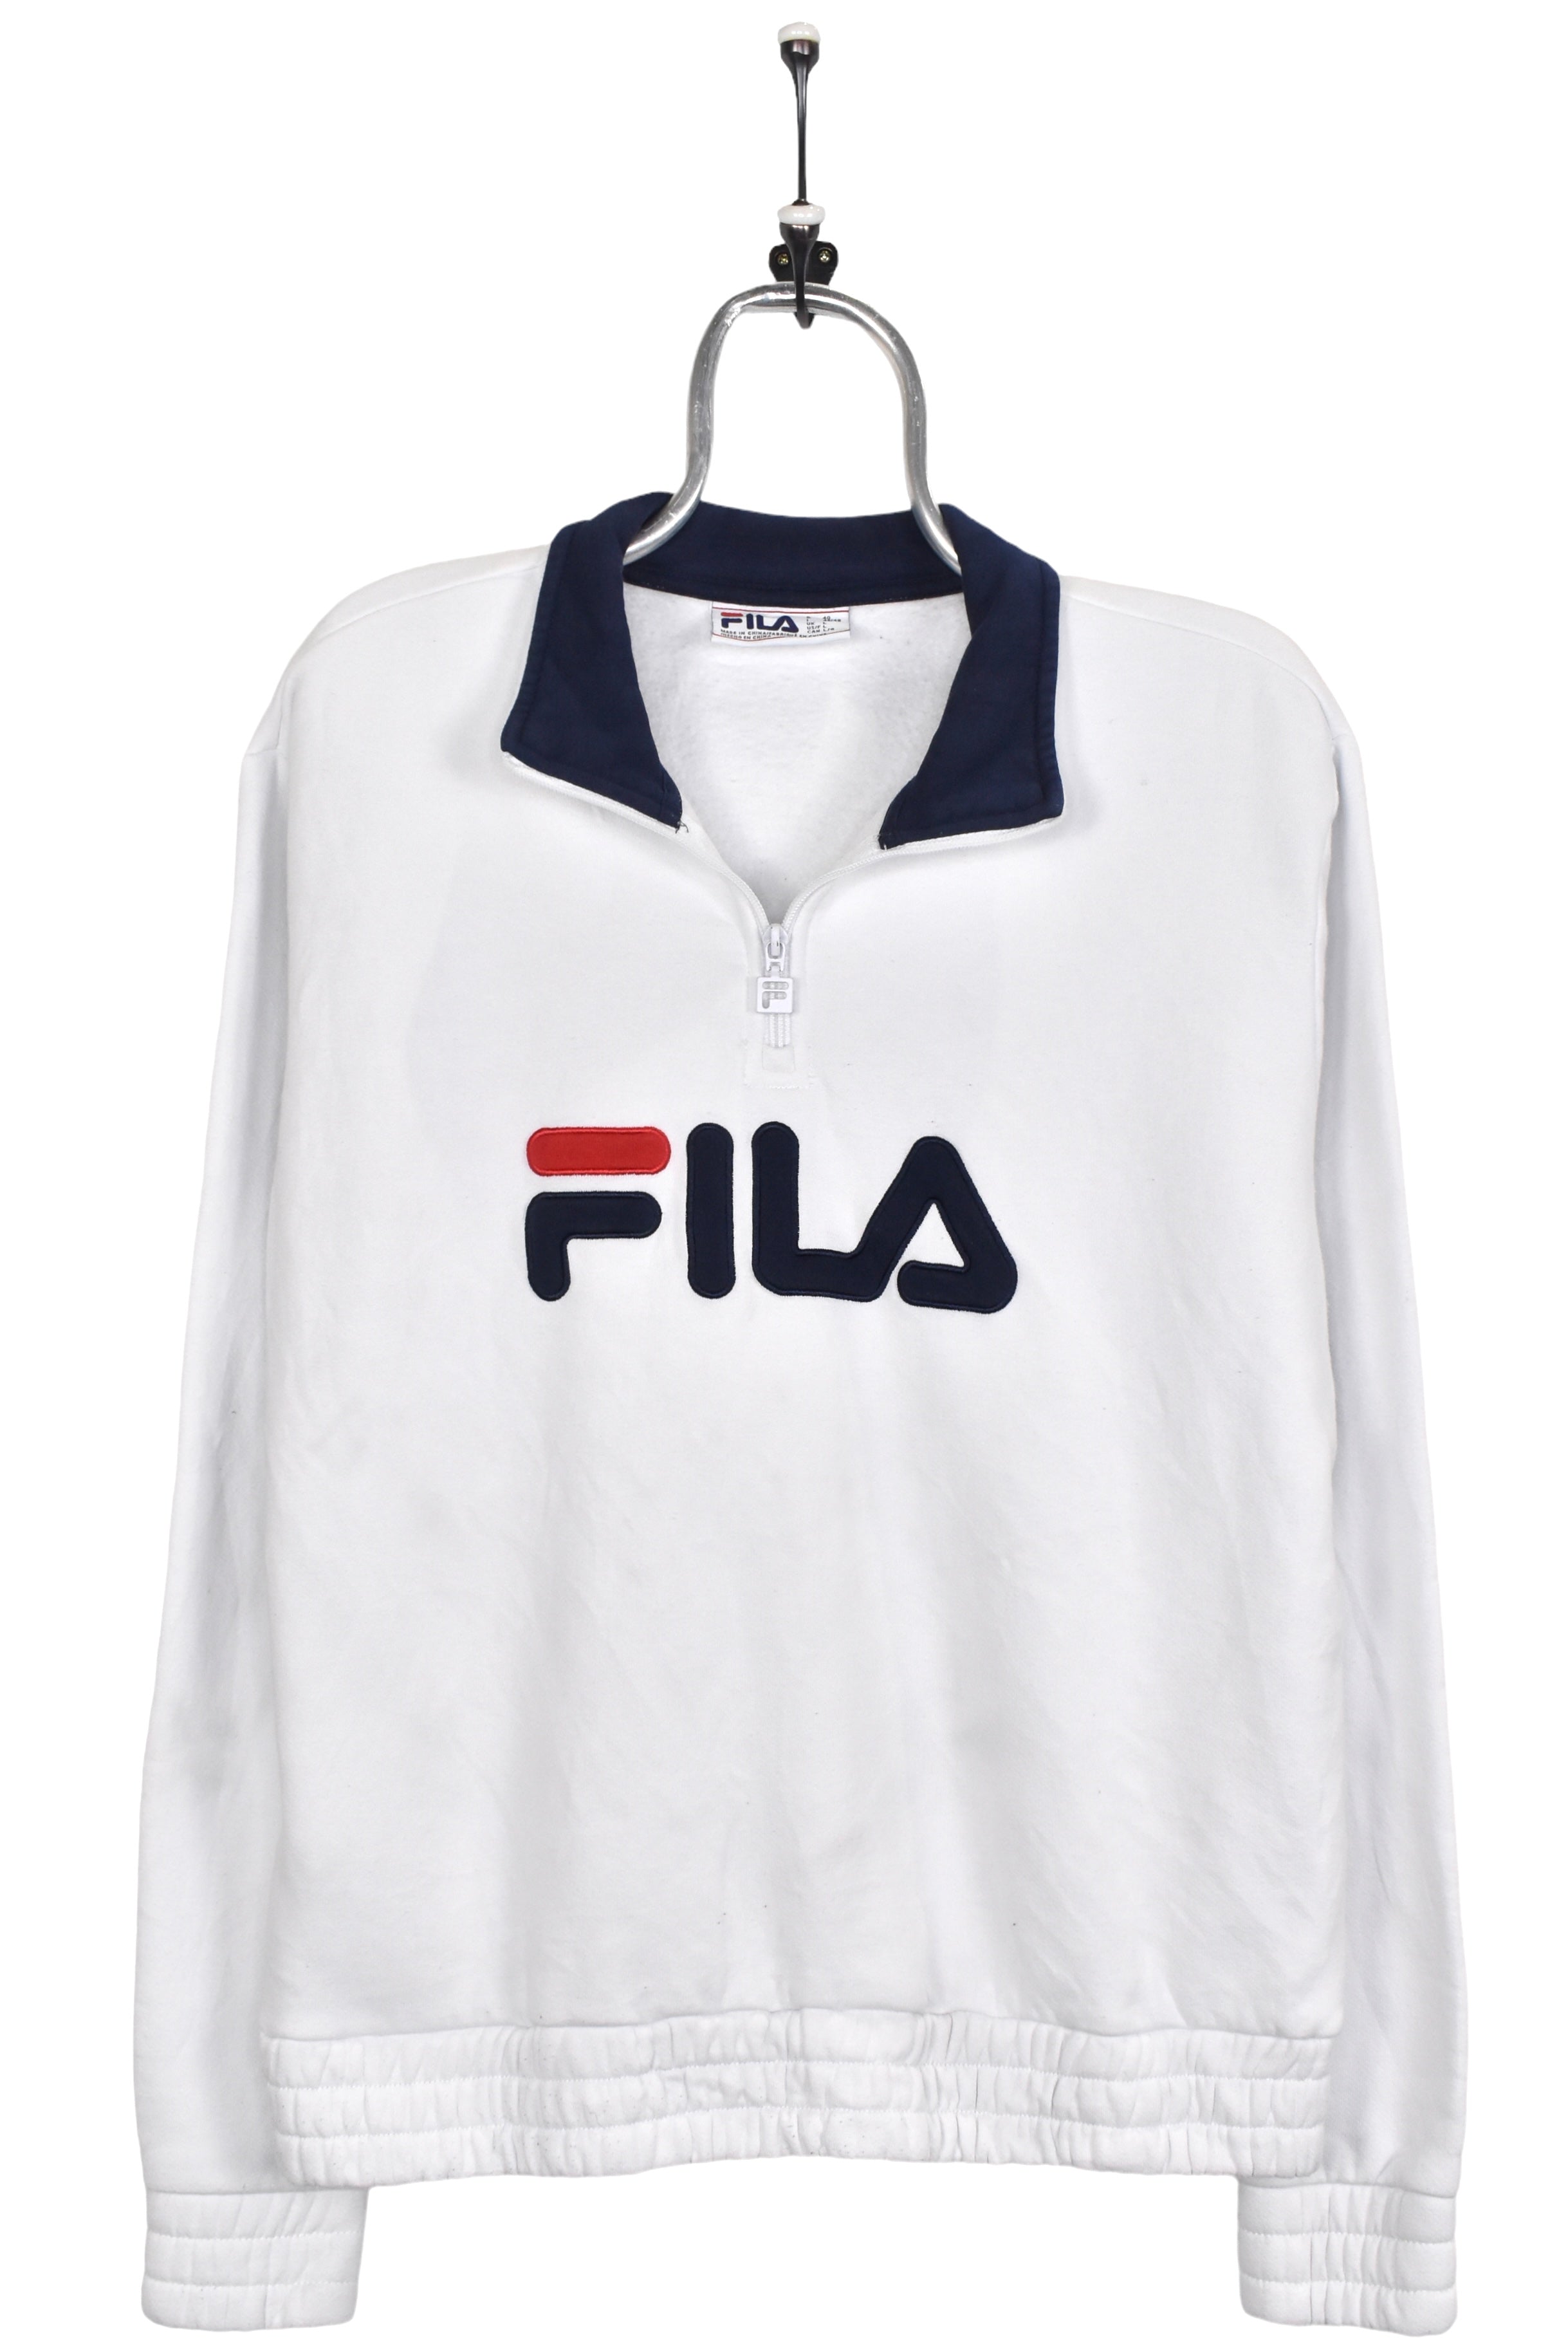 Women's vintage Fila sweatshirt, white embroidered 1/4 zip - AU Medium